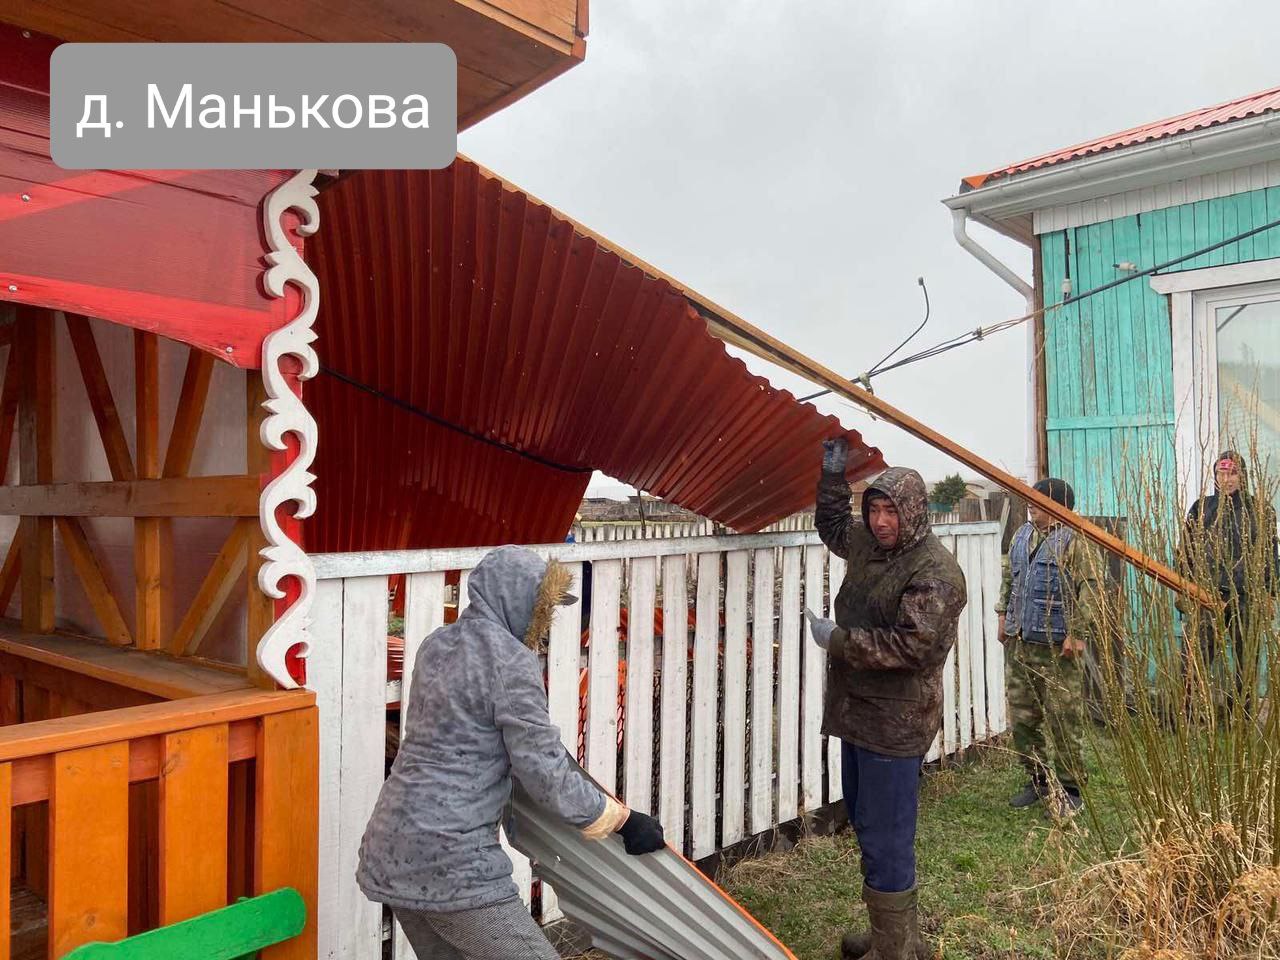 Ураган сорвал кровли со зданий школ в деревне Манькова и в селе Каха Иркутской области